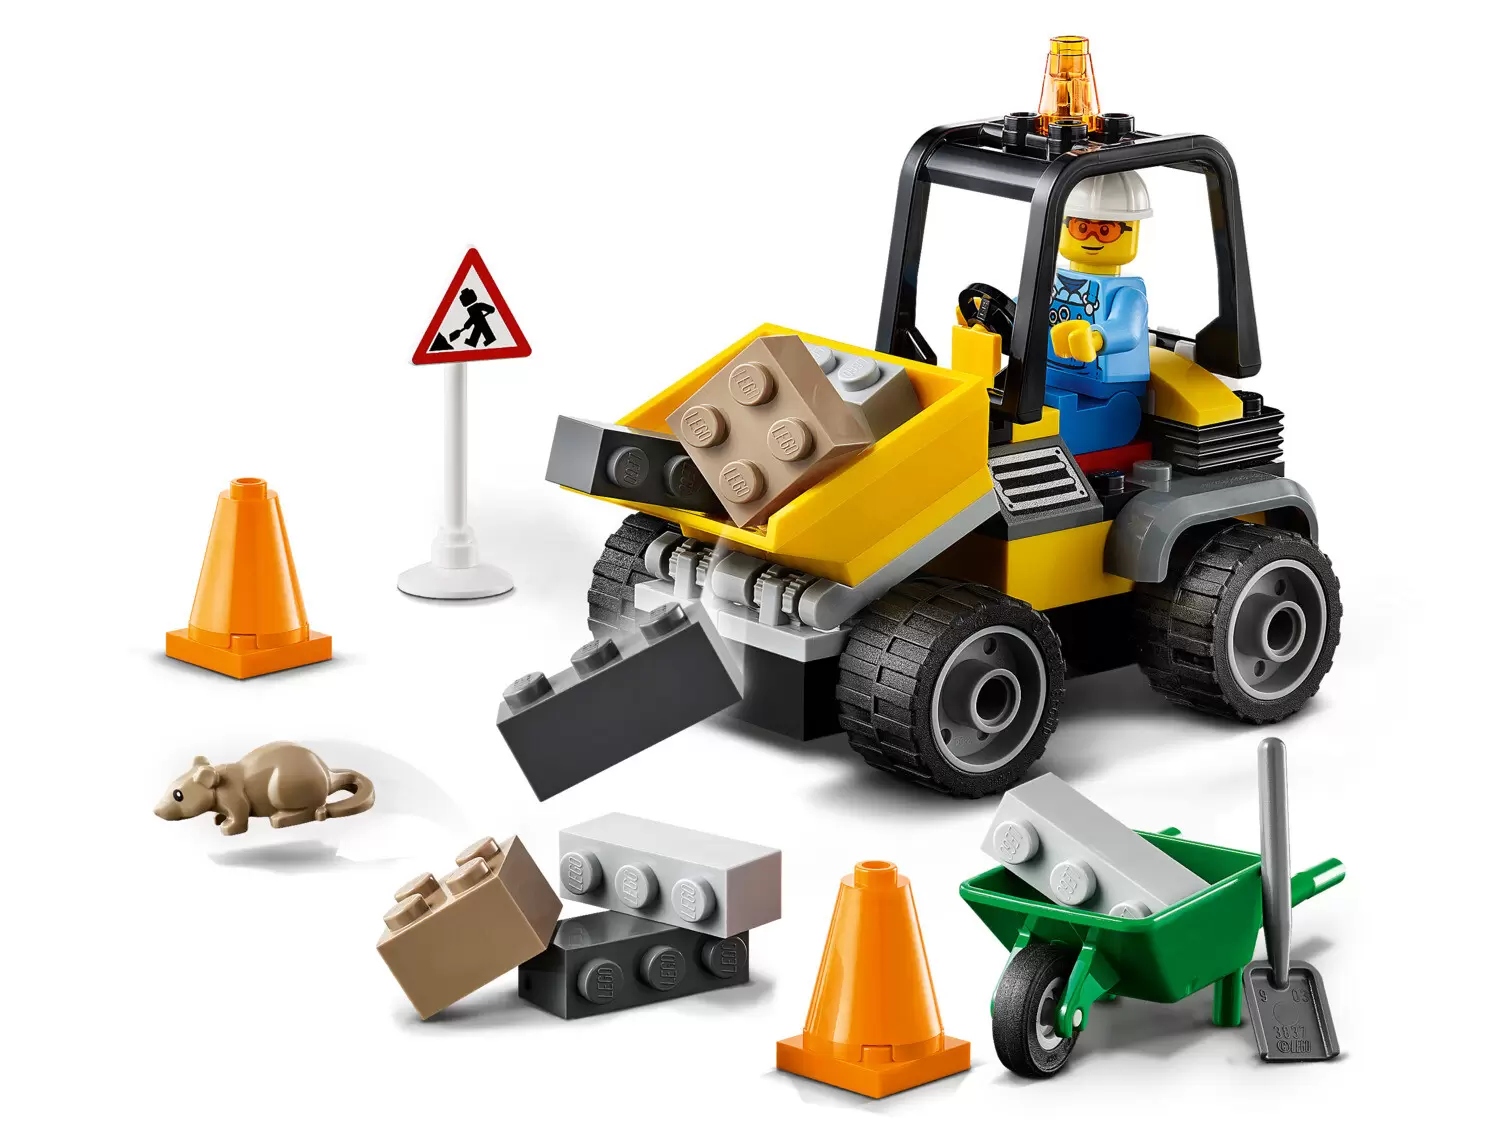 LEGO CITY - Roadwork Truck